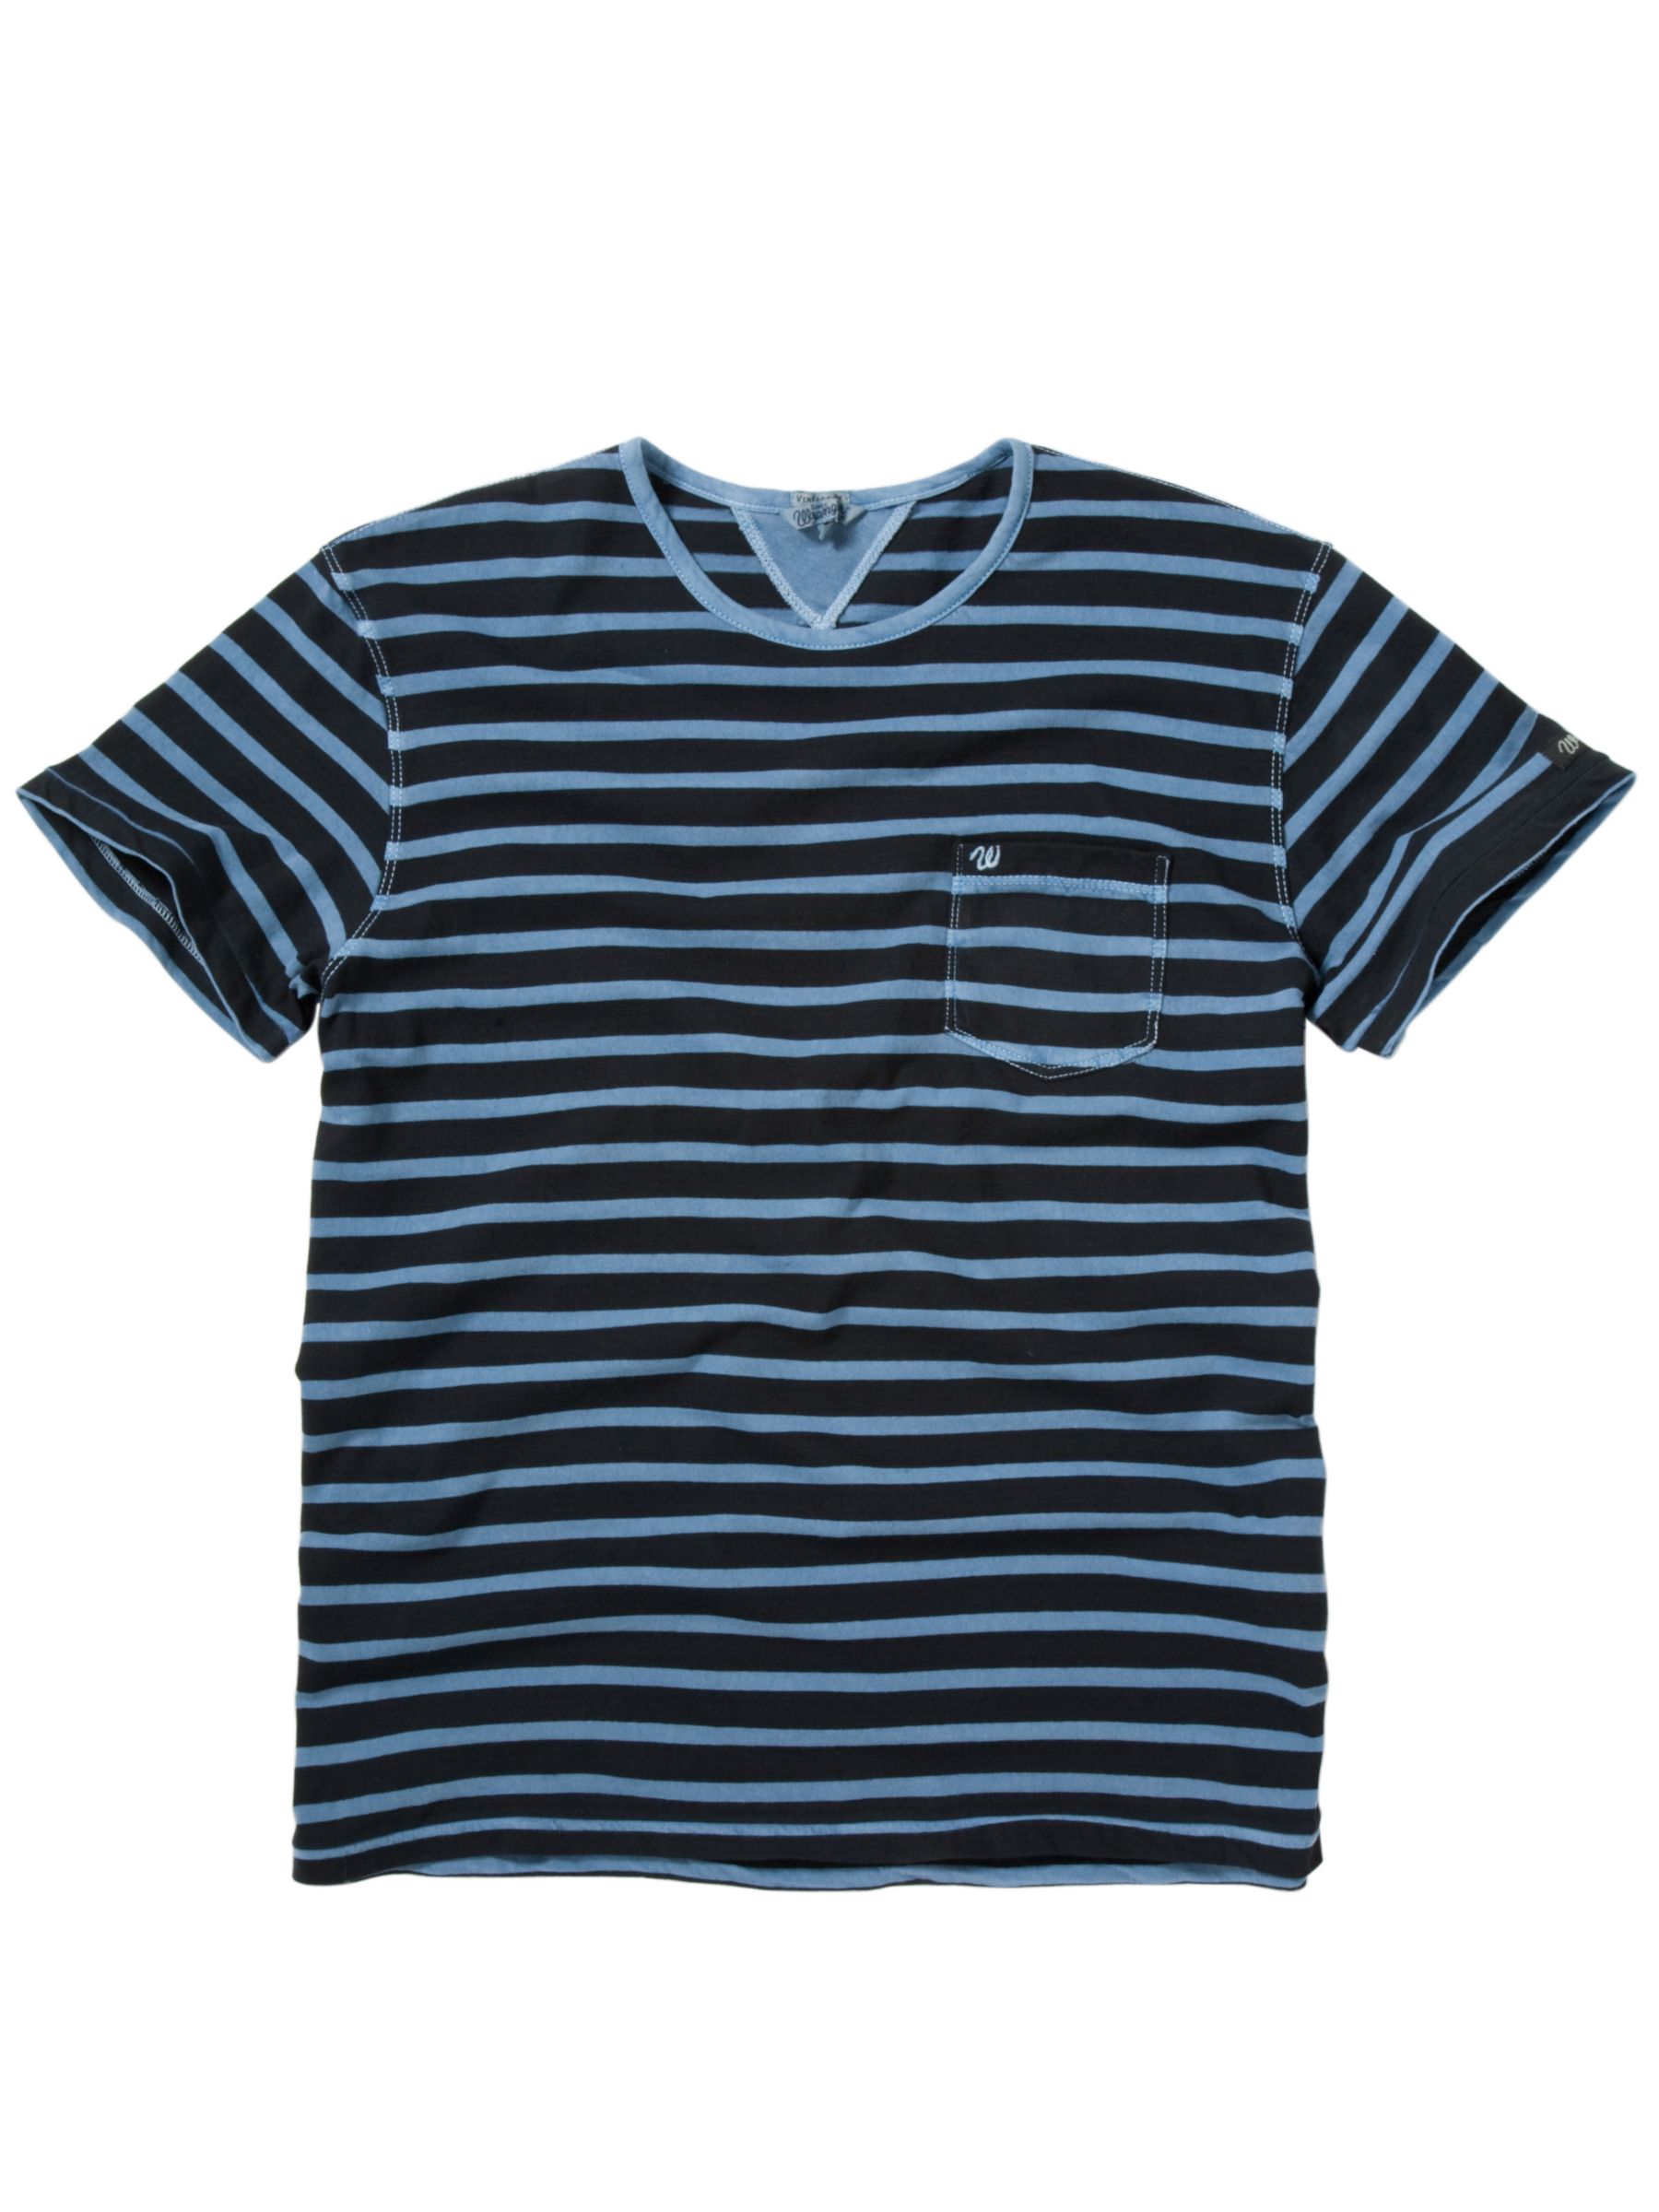 Wrangler Dean Stripe Short-Sleeve T-Shirt,